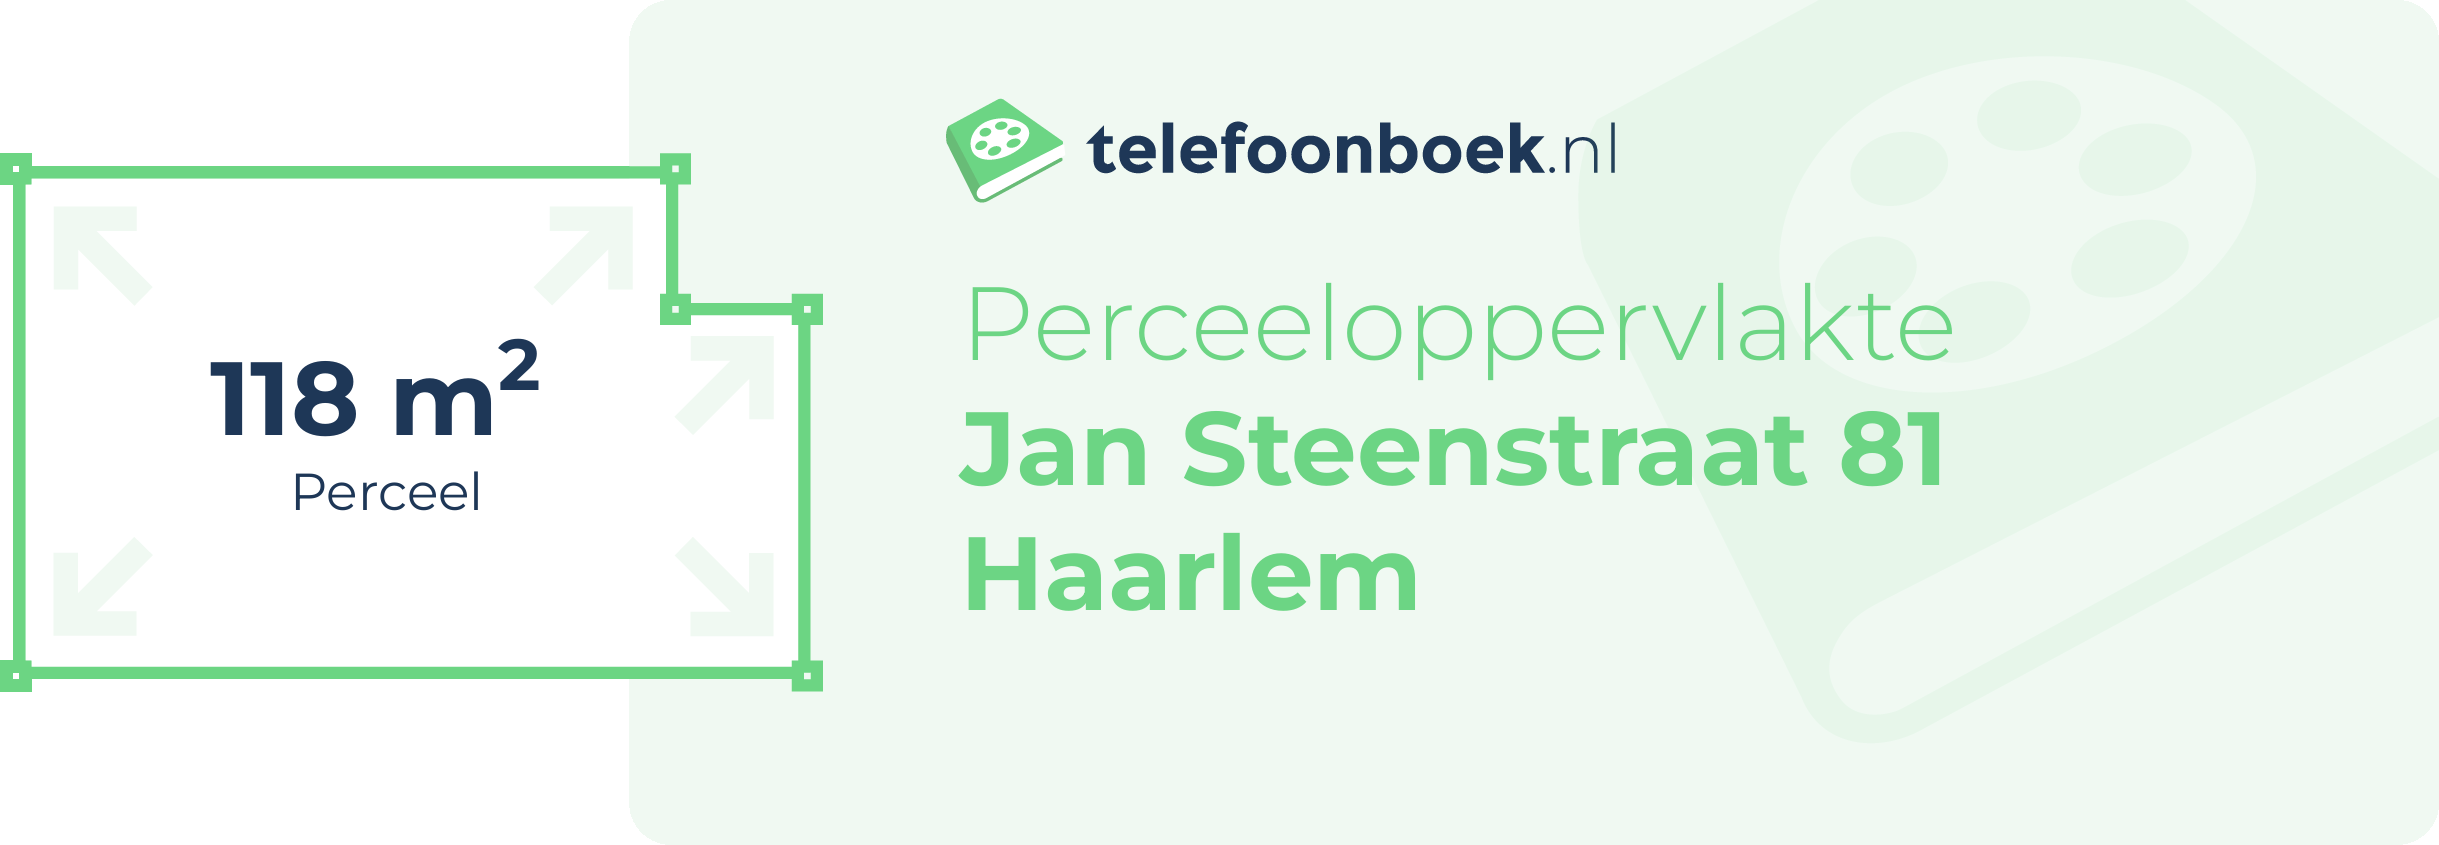 Perceeloppervlakte Jan Steenstraat 81 Haarlem